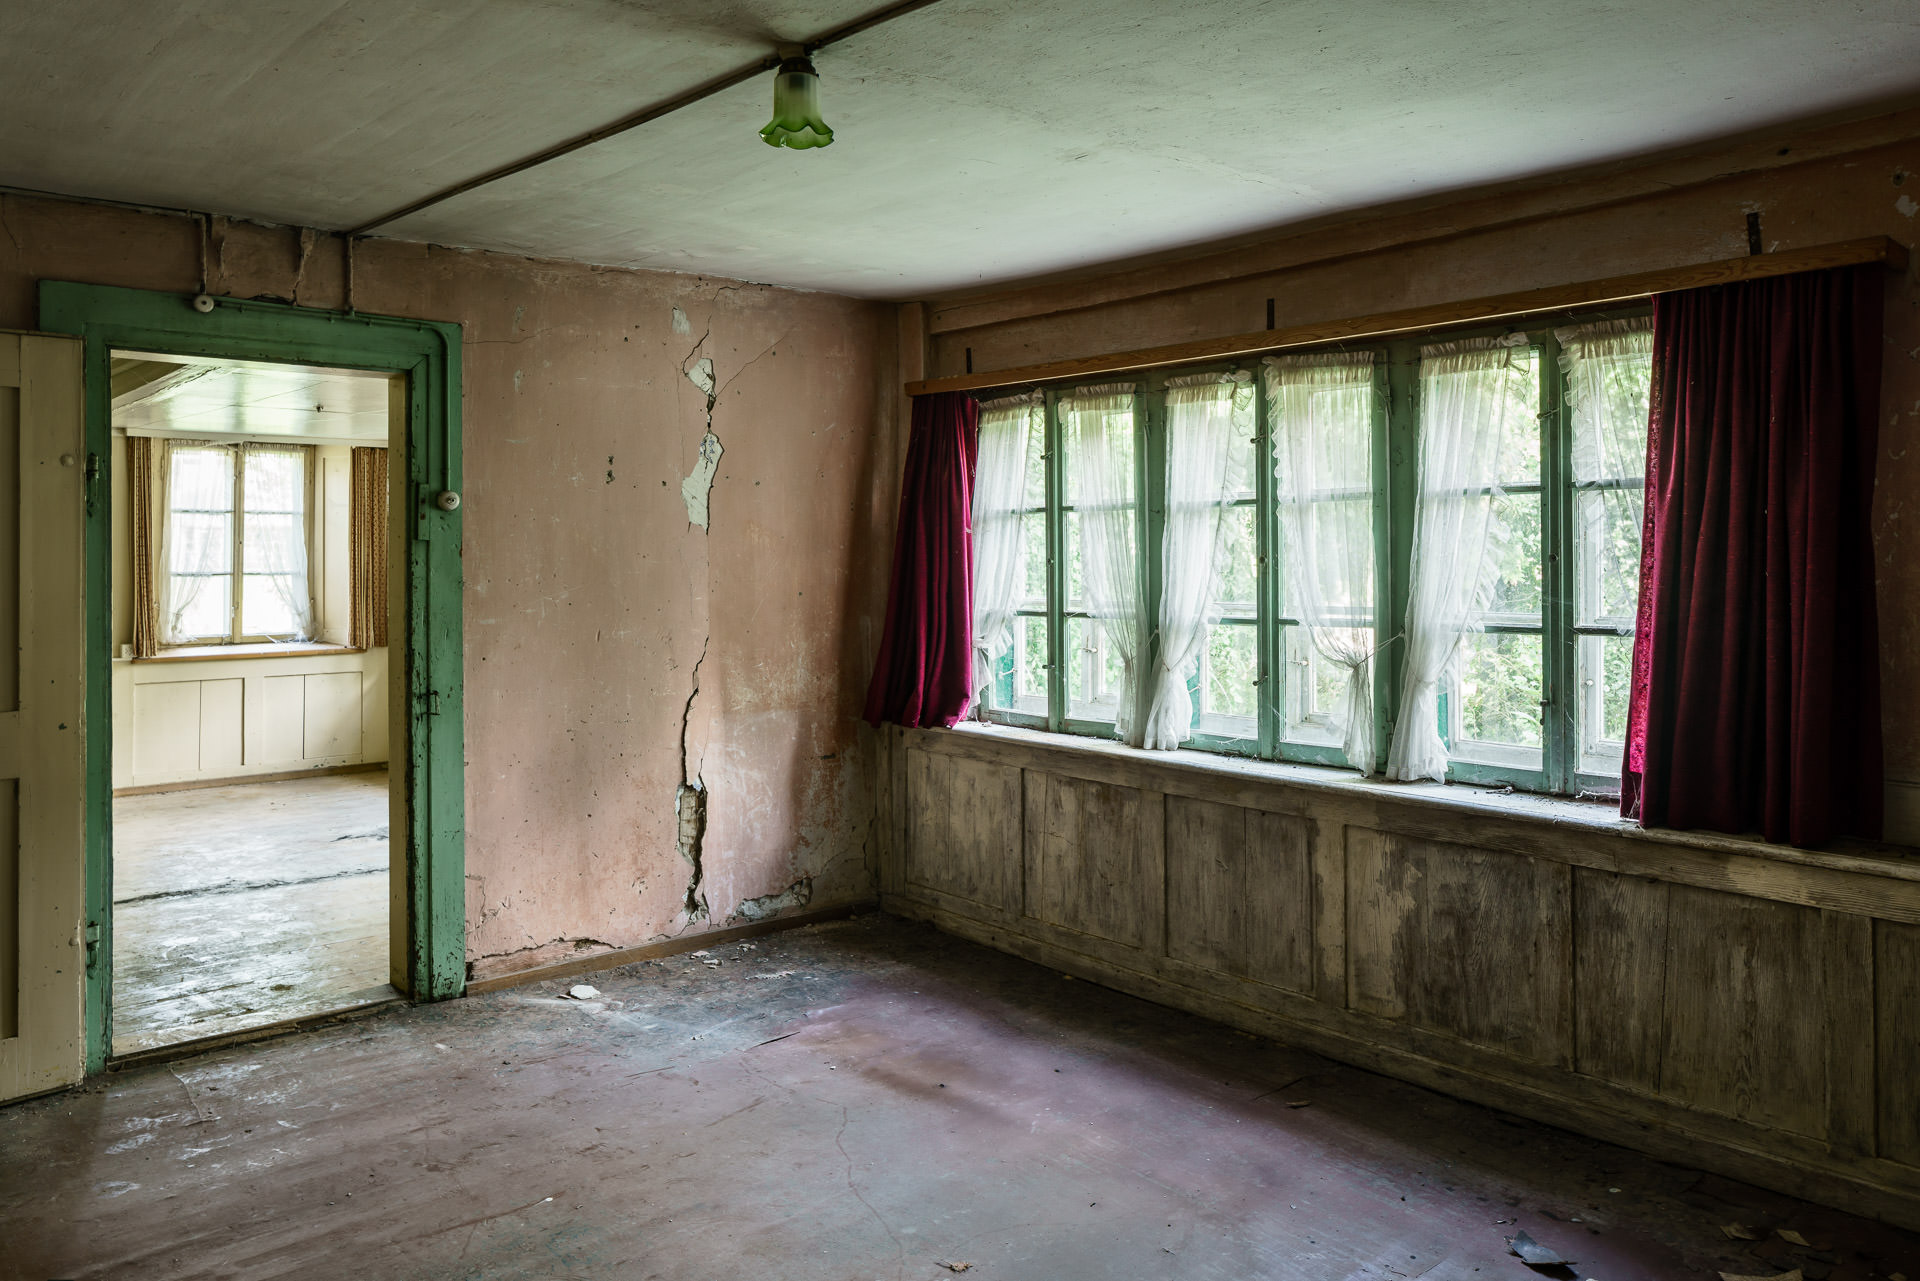 Altes Bauernhaus, leeres Gebäude, verlassen, Wohnzimmer mit alten Fenstern, Architekturfotografie Denkmalschutz, Philippe Wiget